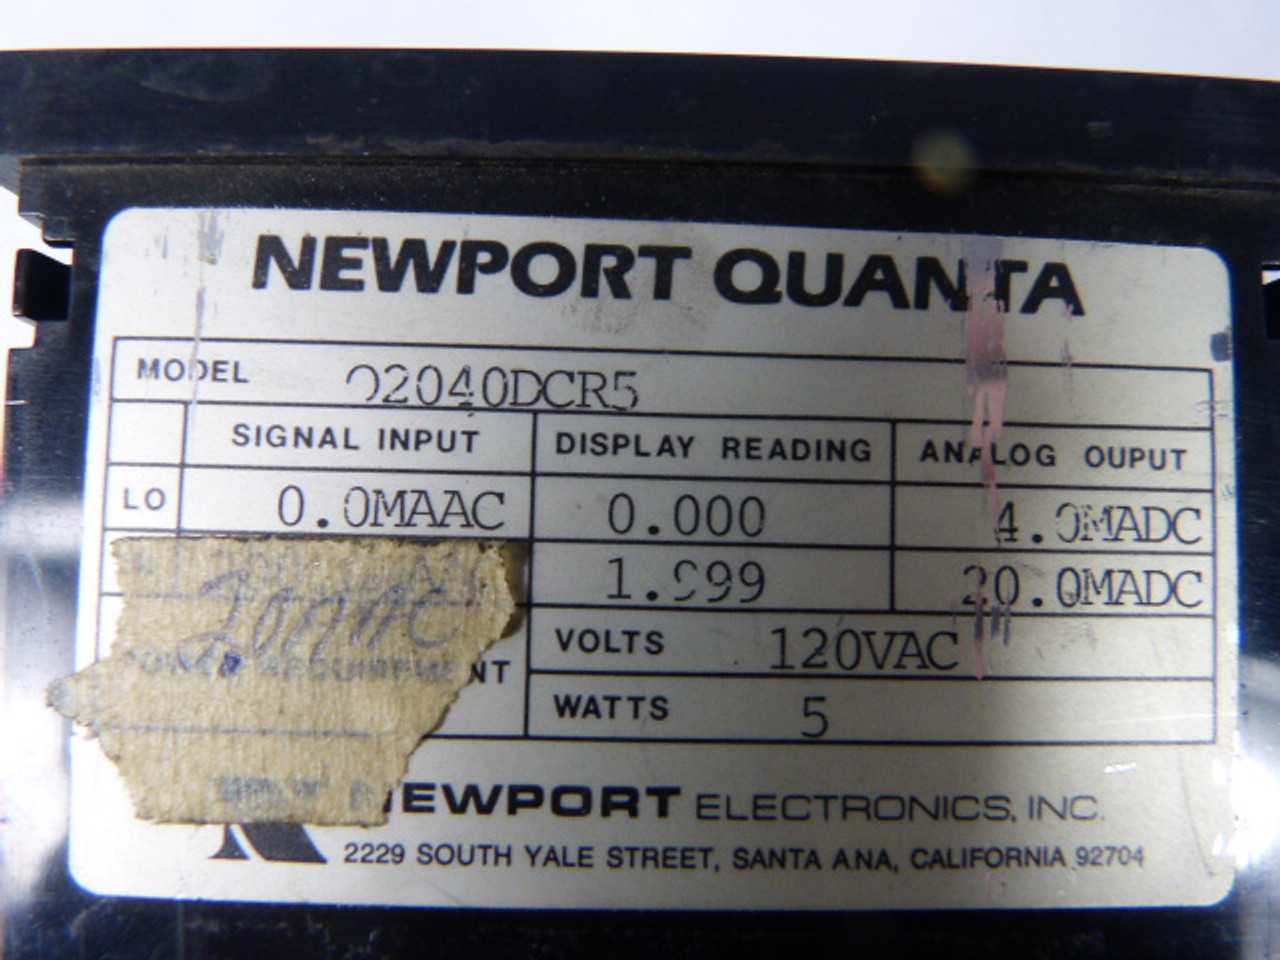 Newport Quanta Q2040DCR5 Digital Panel Meter 4 Digit USED